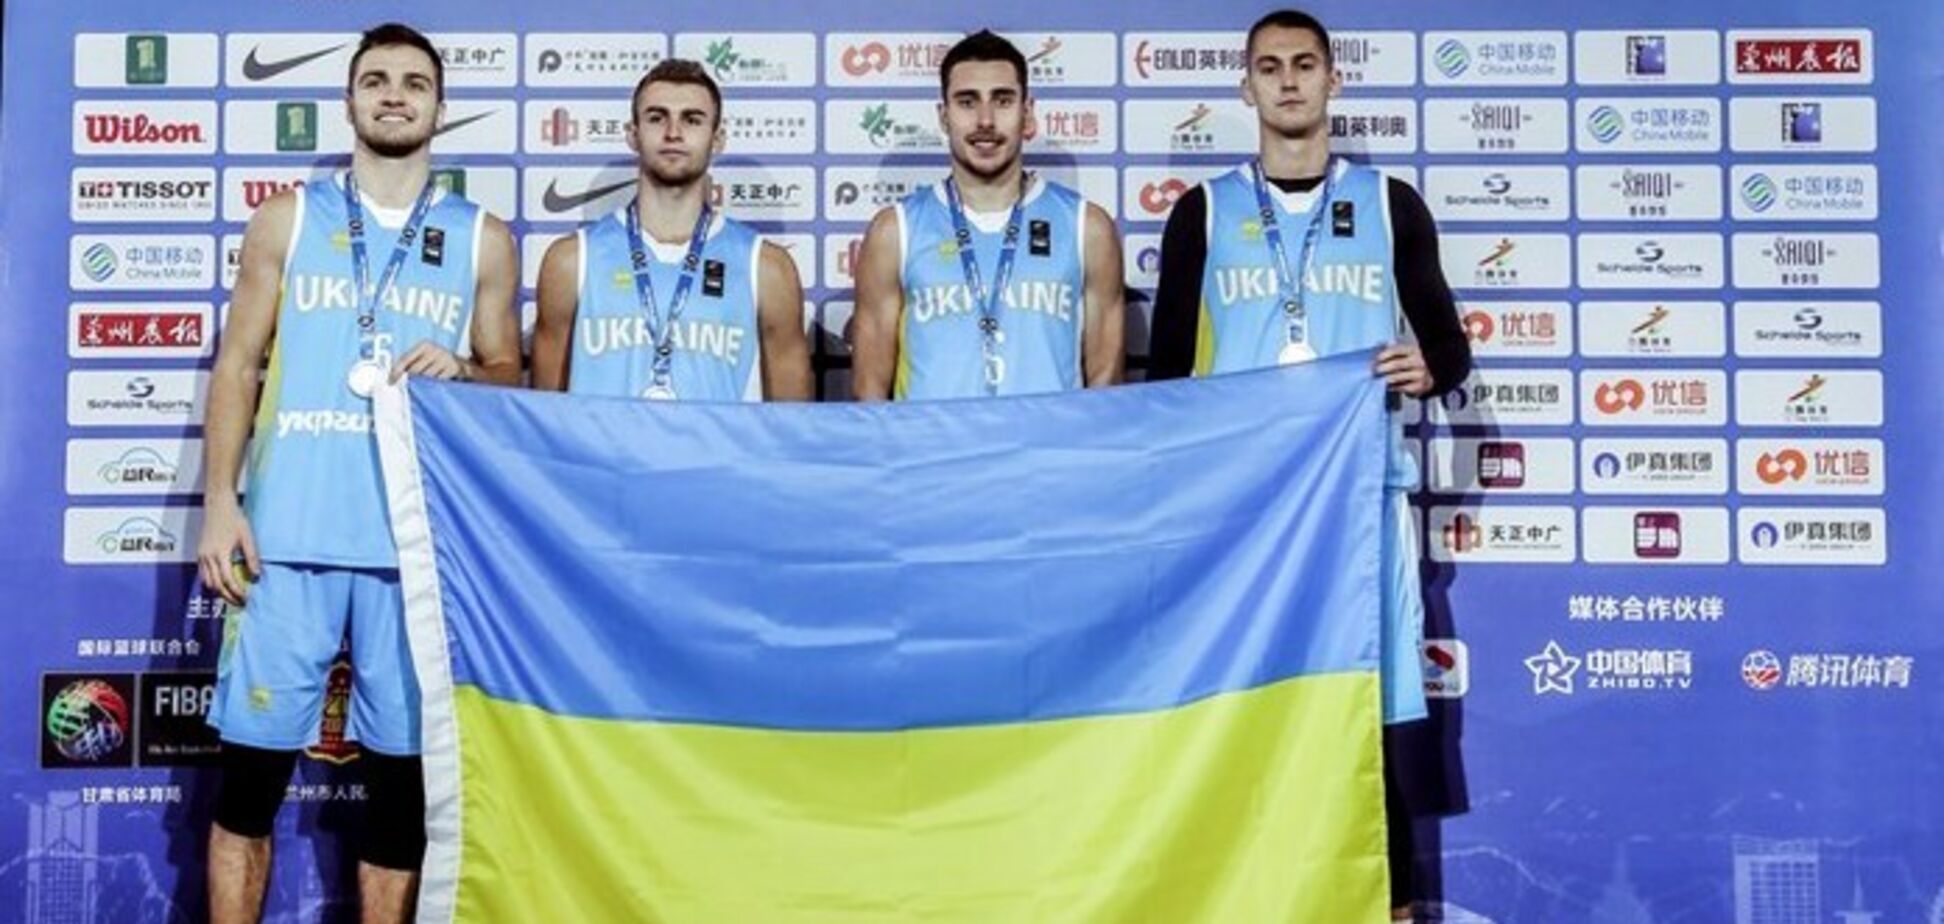 Серебряная Украина: что нужно знать о вице-чемпионах мира по баскетболу 3х3